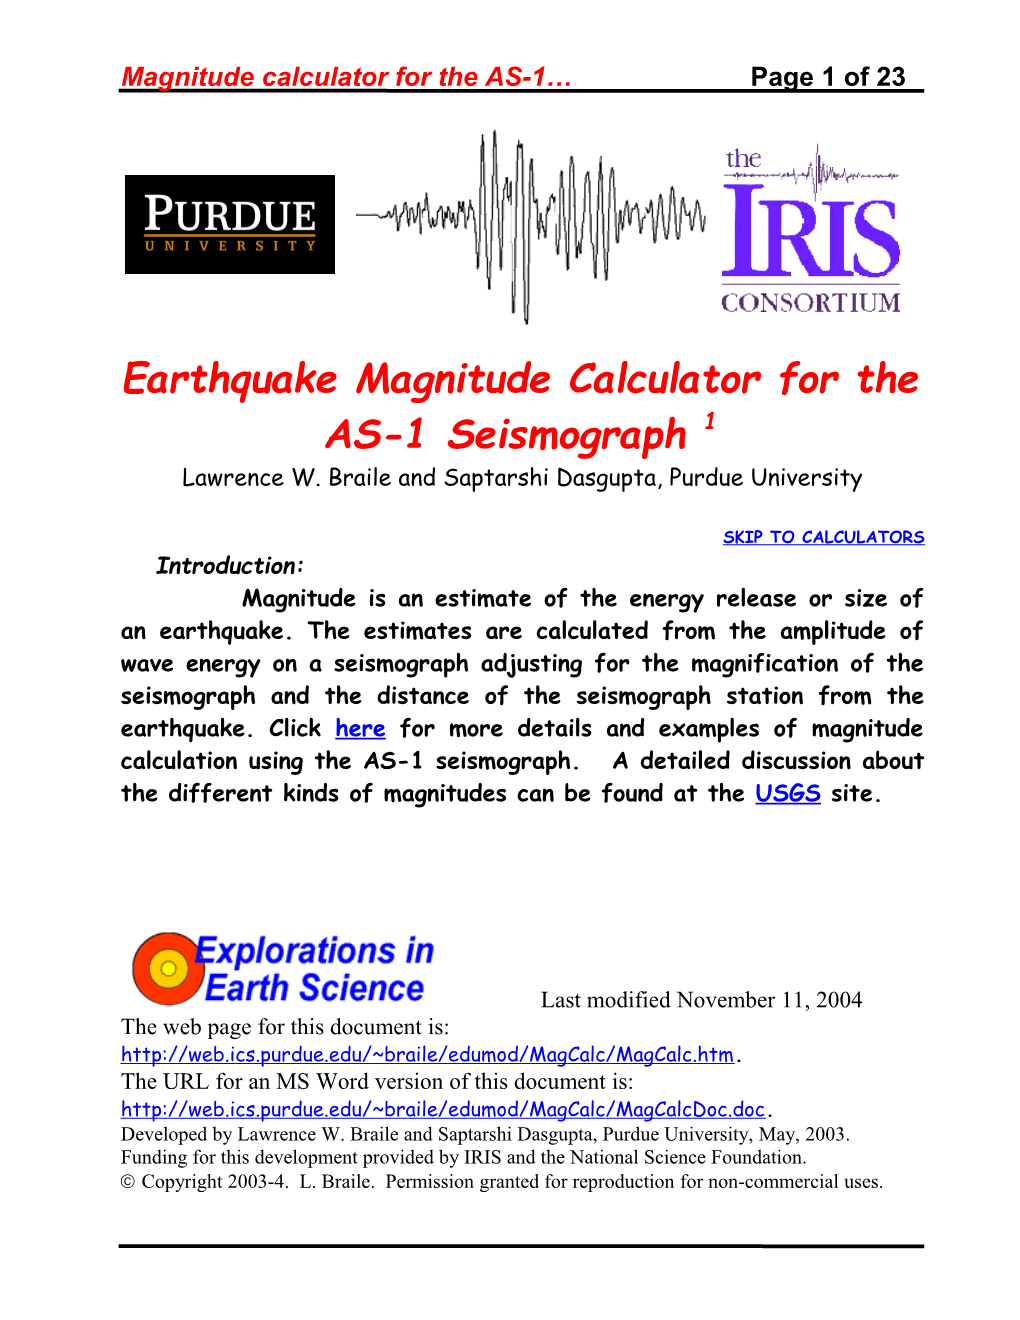 Earthquake Magnitude Calculator for the AS-1 Seismograph1